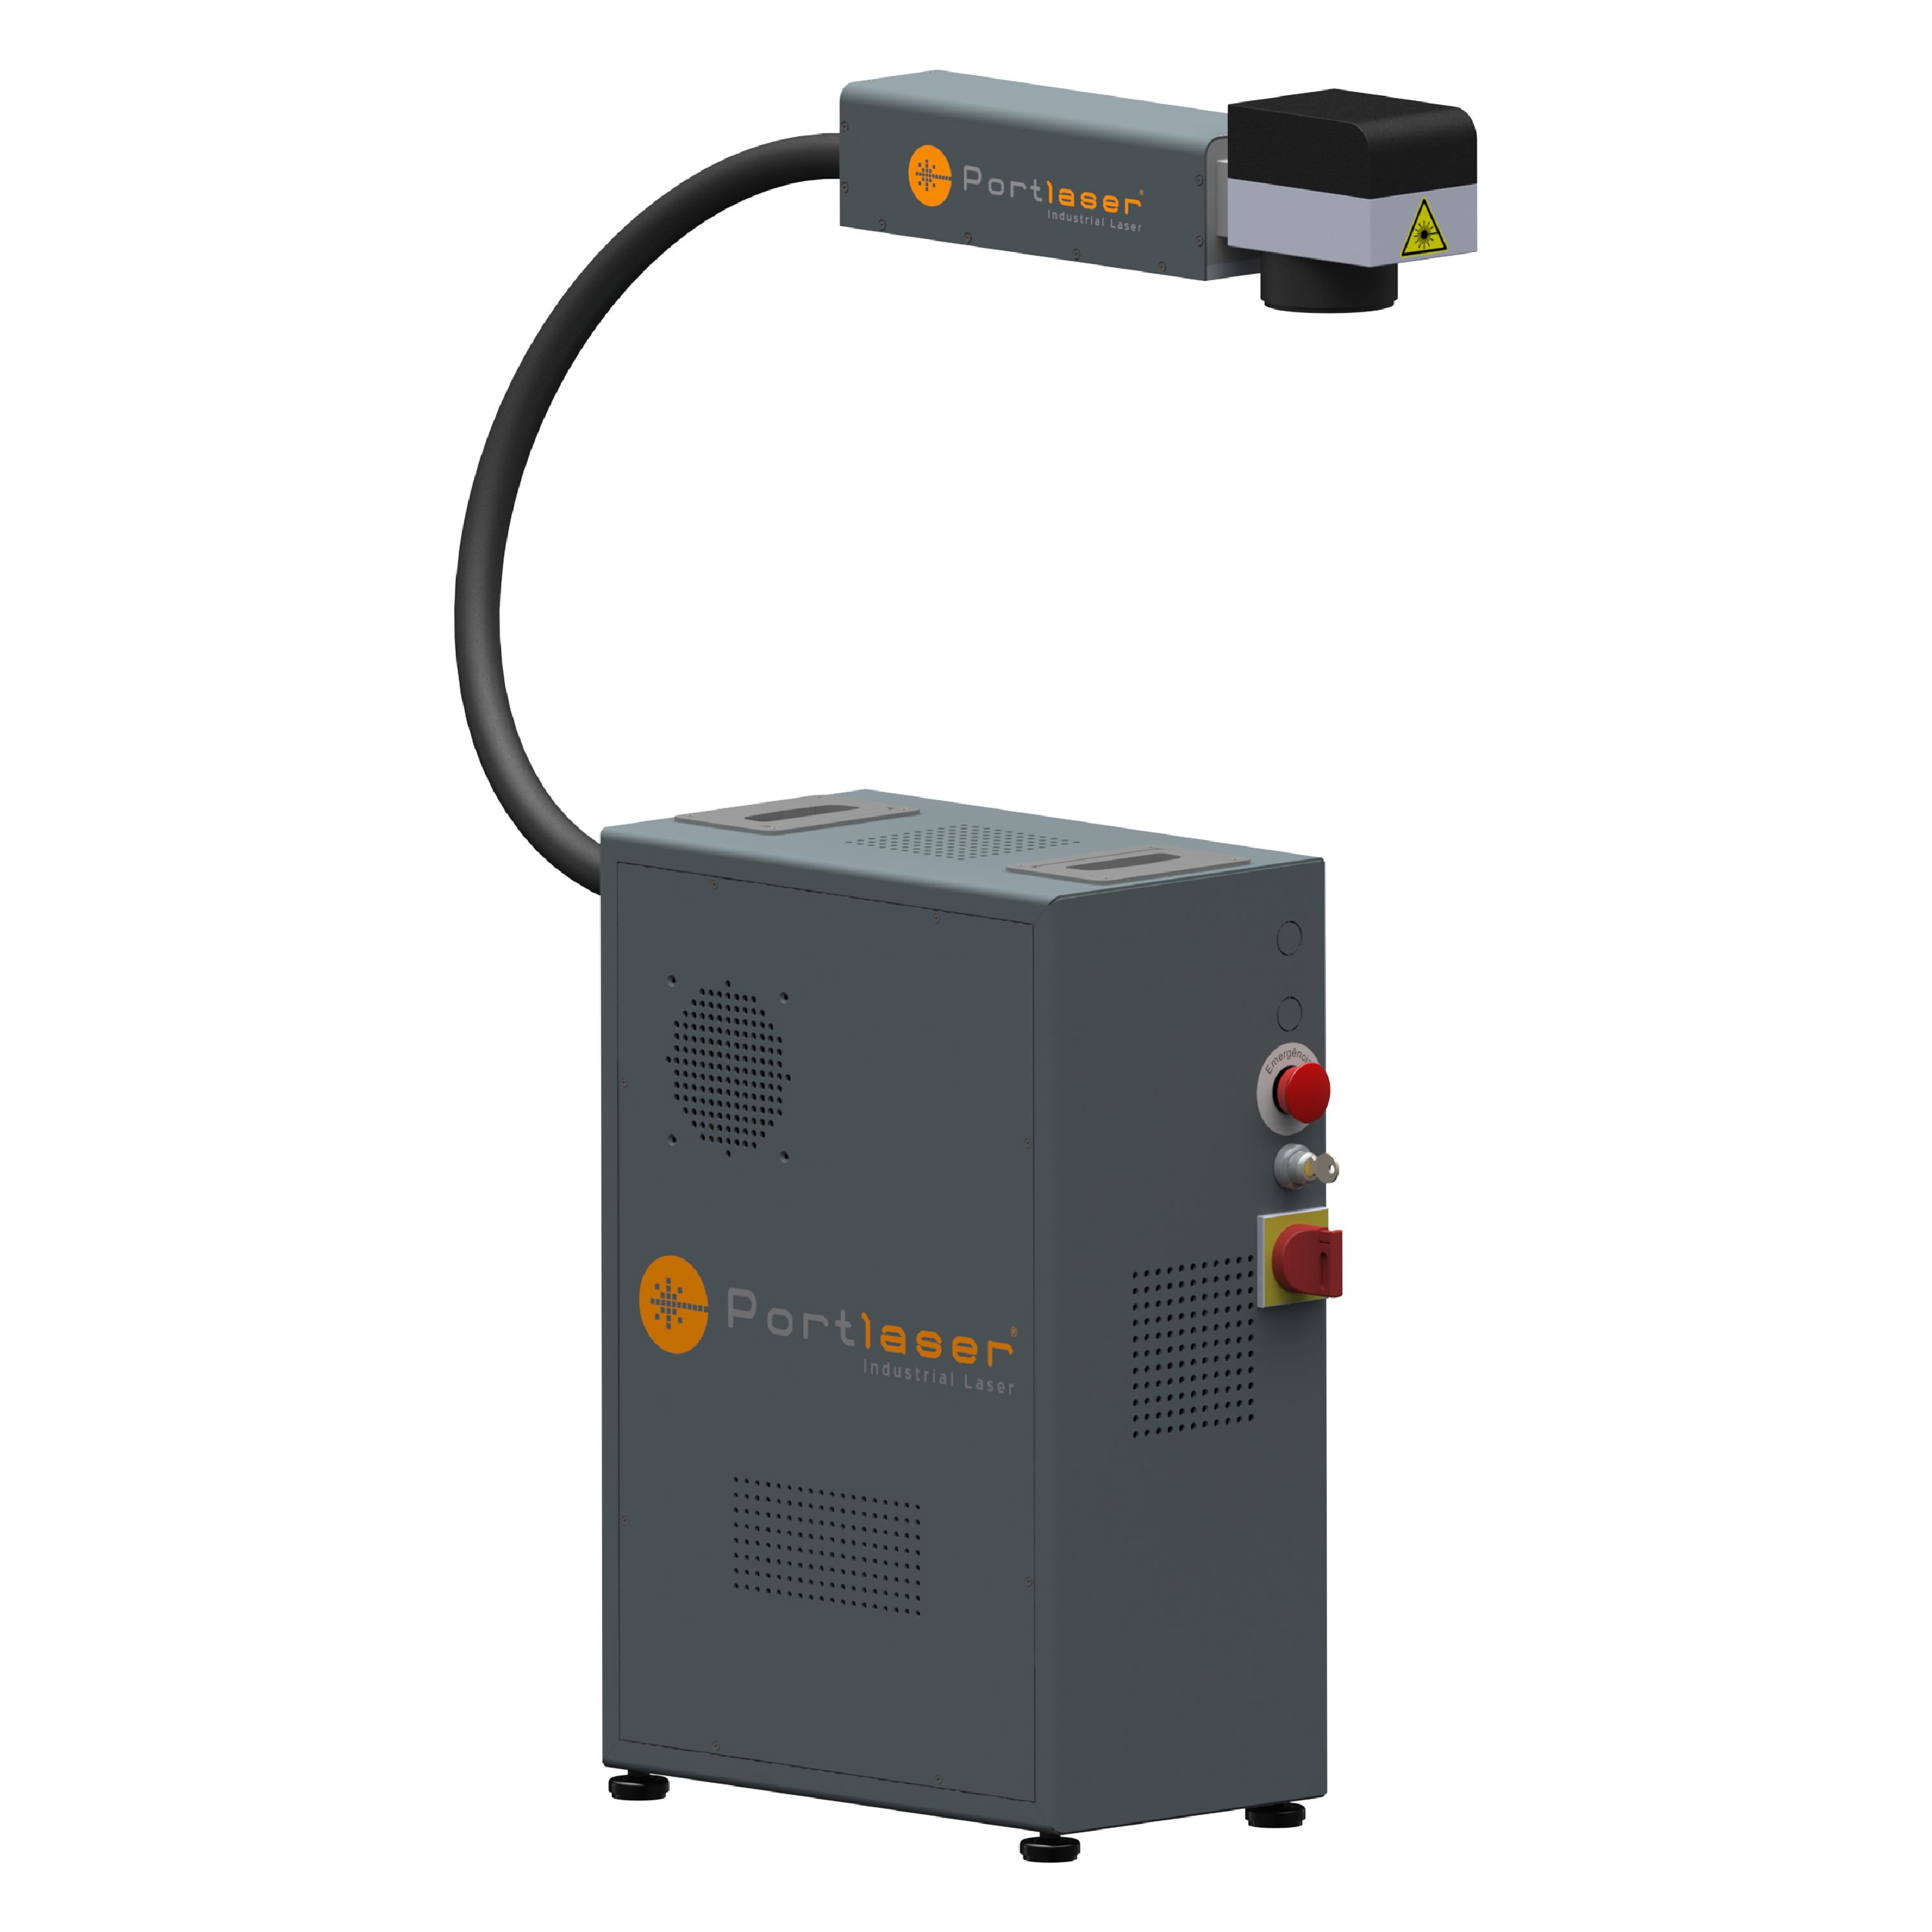 Fiber mark oem - marquages laser - portlaser - aire util de travail de 70x70mm à 205x205mm_0